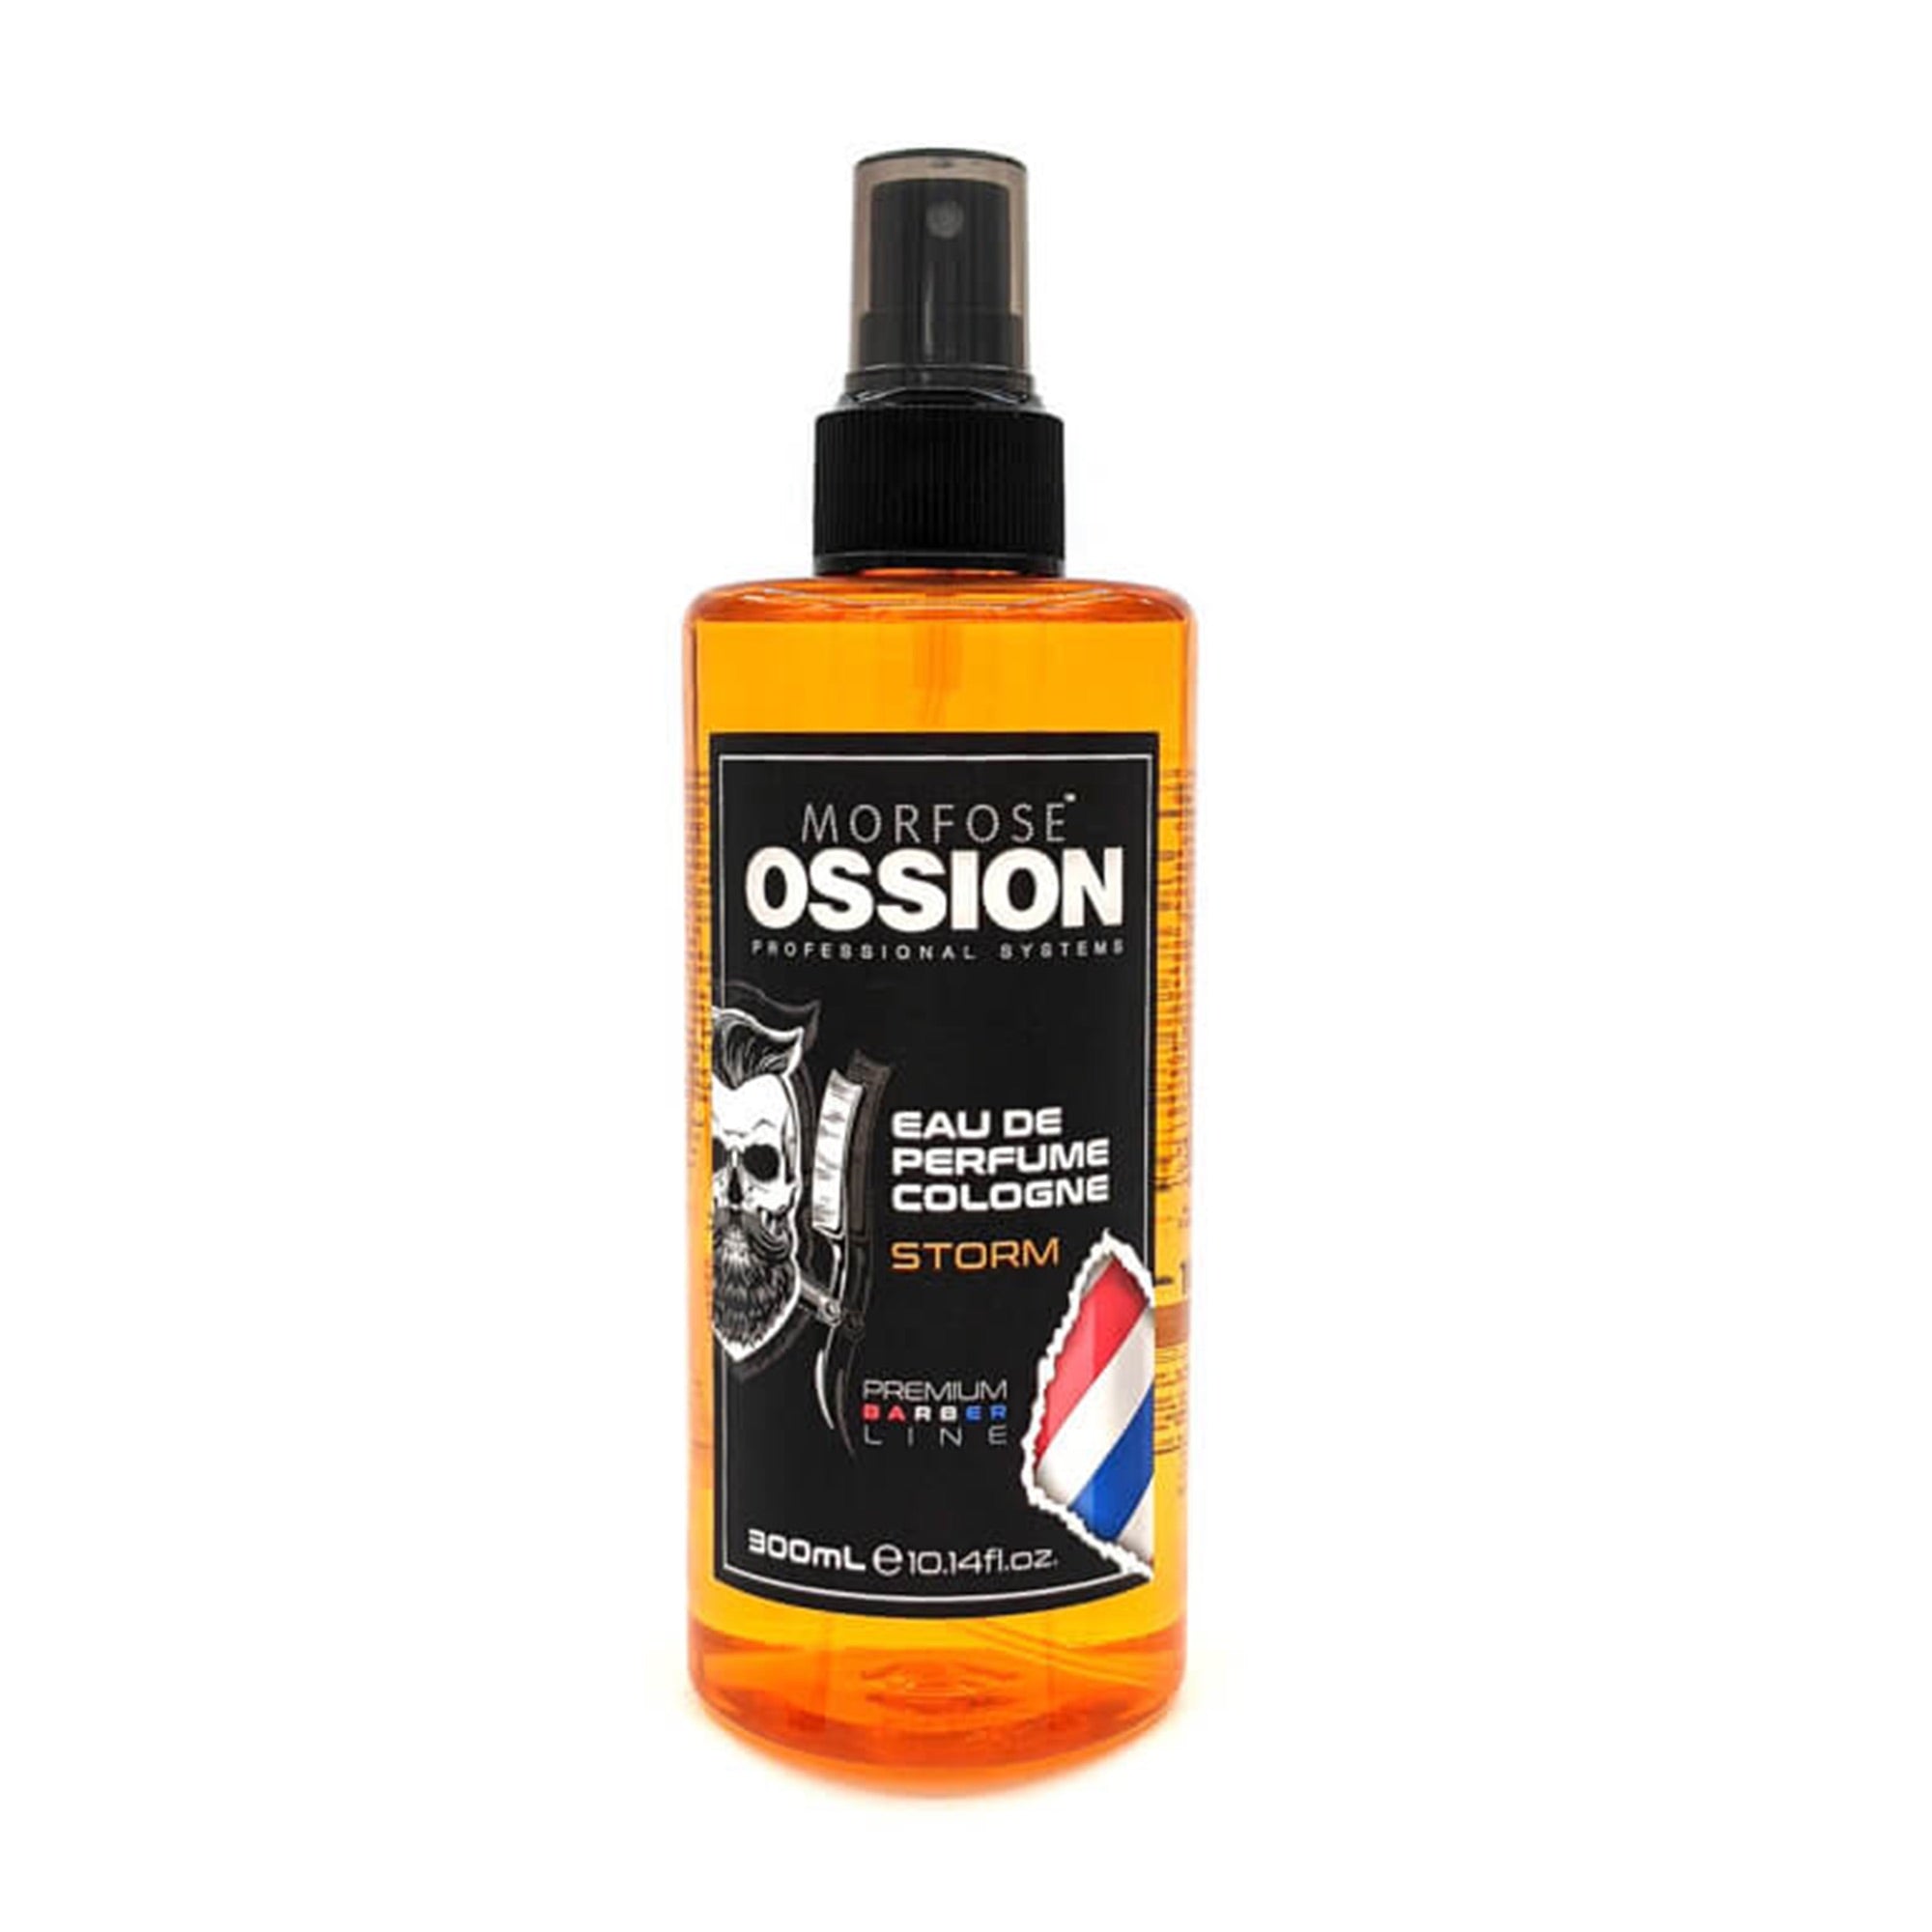 Morfose - Ossion Eau De Perfume Cologne Storm 300ml